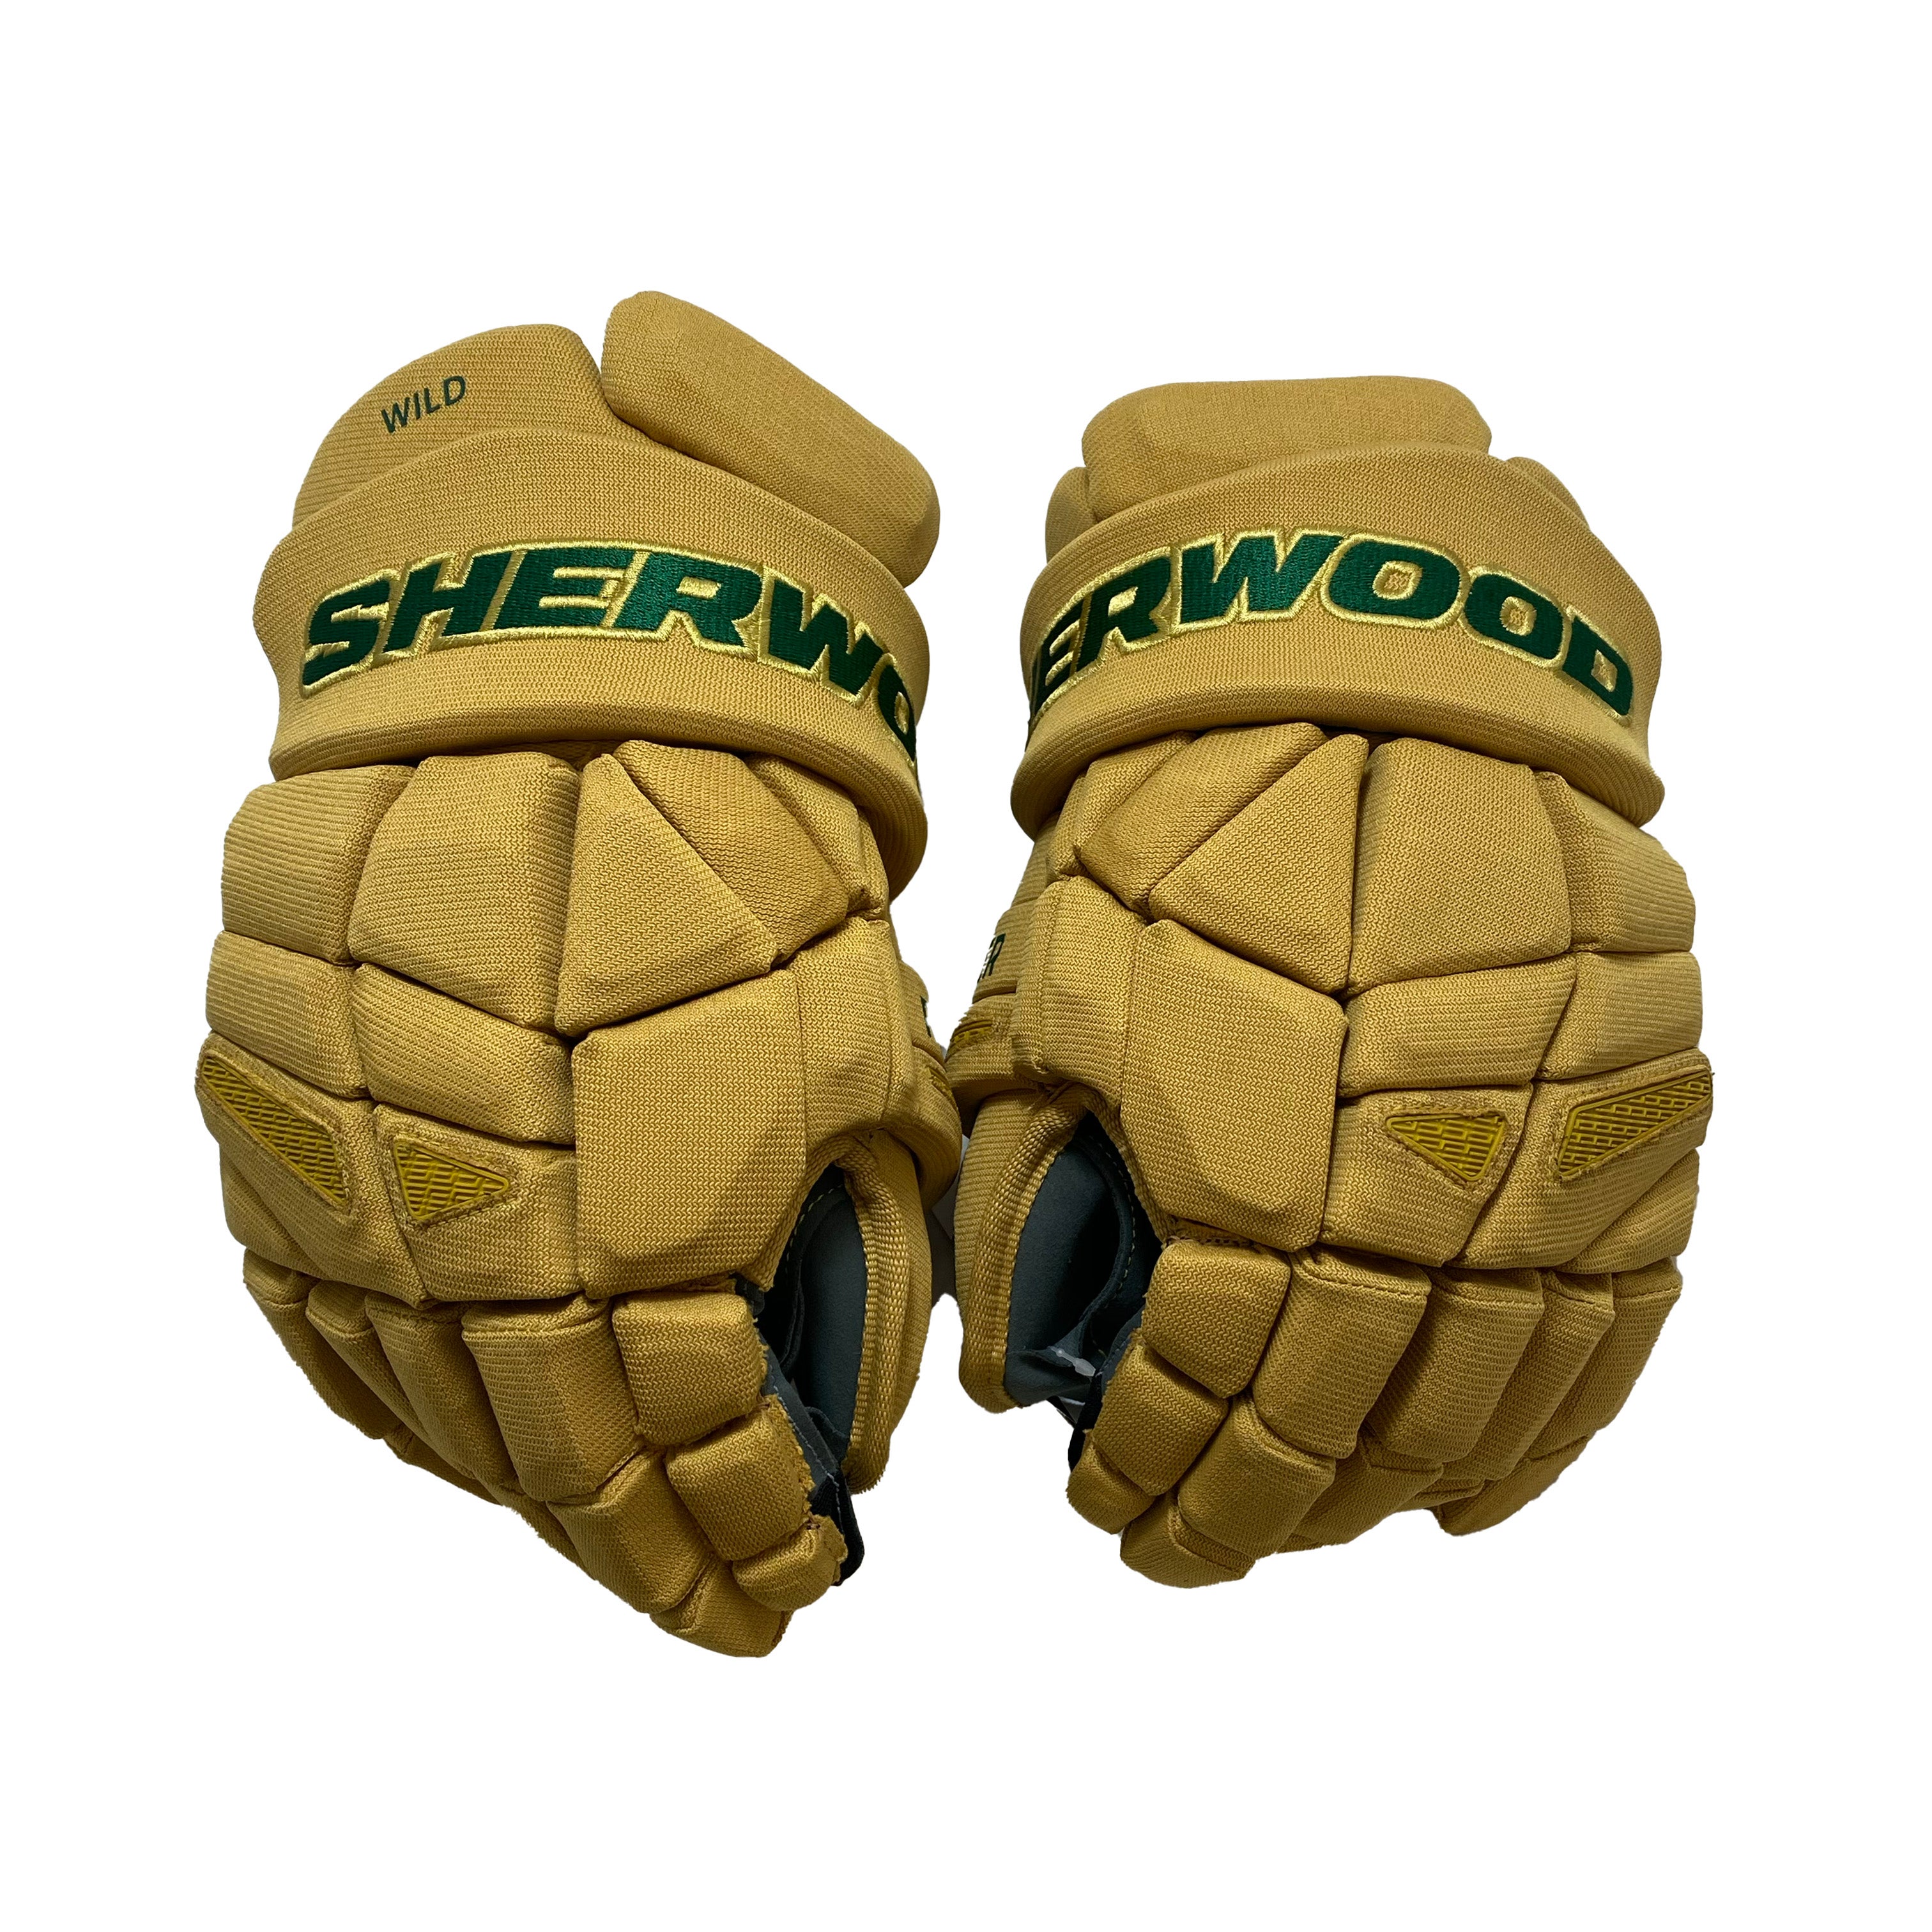 Sherwood Rekker Legend Pro - NHL Pro Stock Glove - Los Angeles Kings ( –  HockeyStickMan